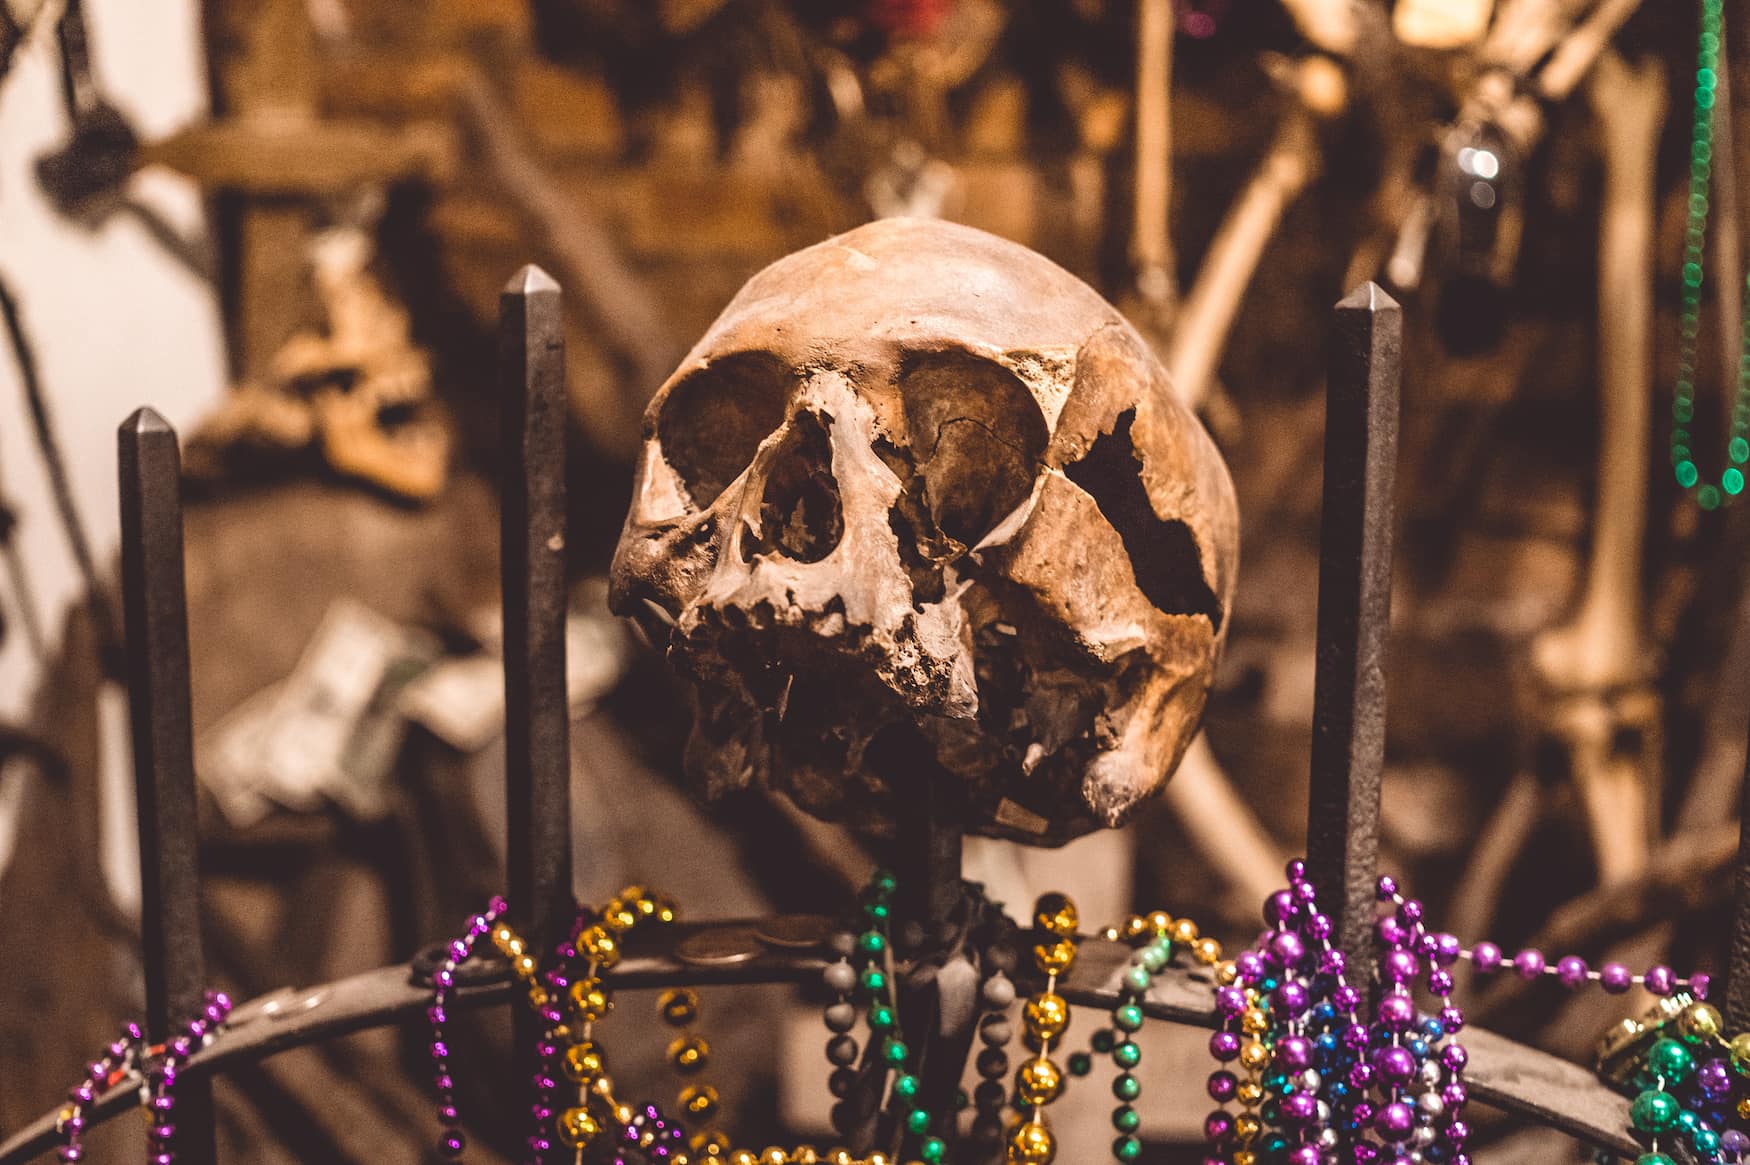 Voodoo-Kultur in New Orleans